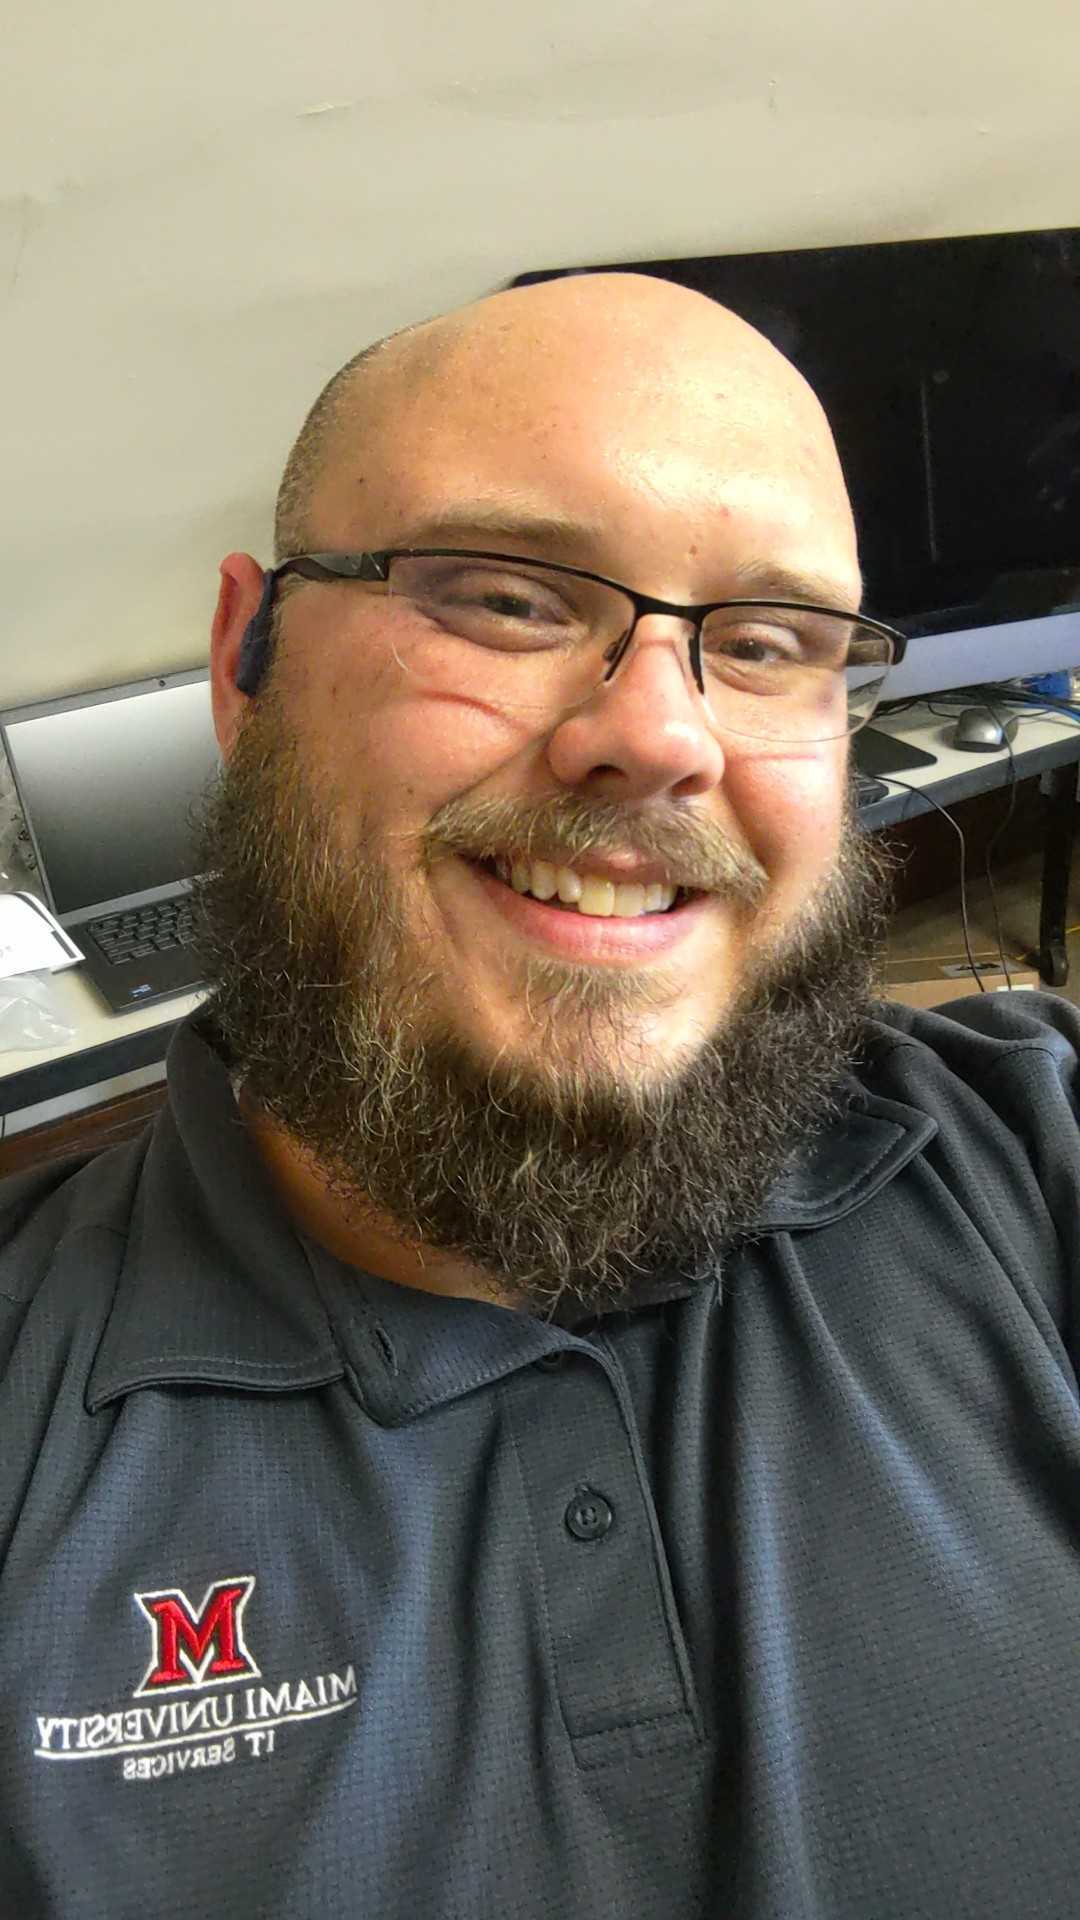 Headshot of Steven Harvey, a white bearded man with glasses